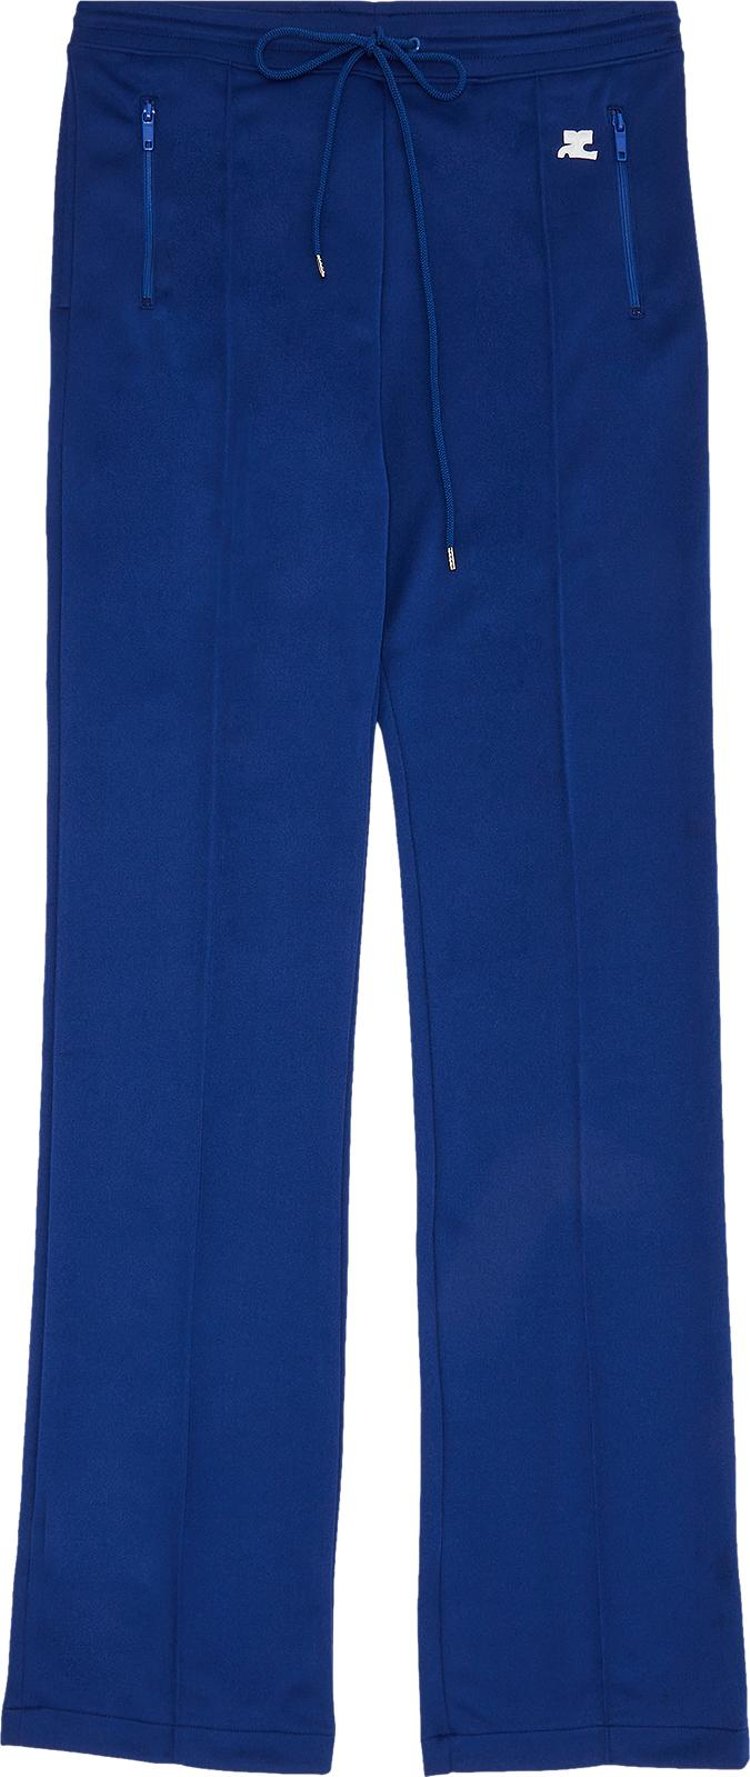 Courrèges Interlock Tracksuit Pants 'Vintage Blue'